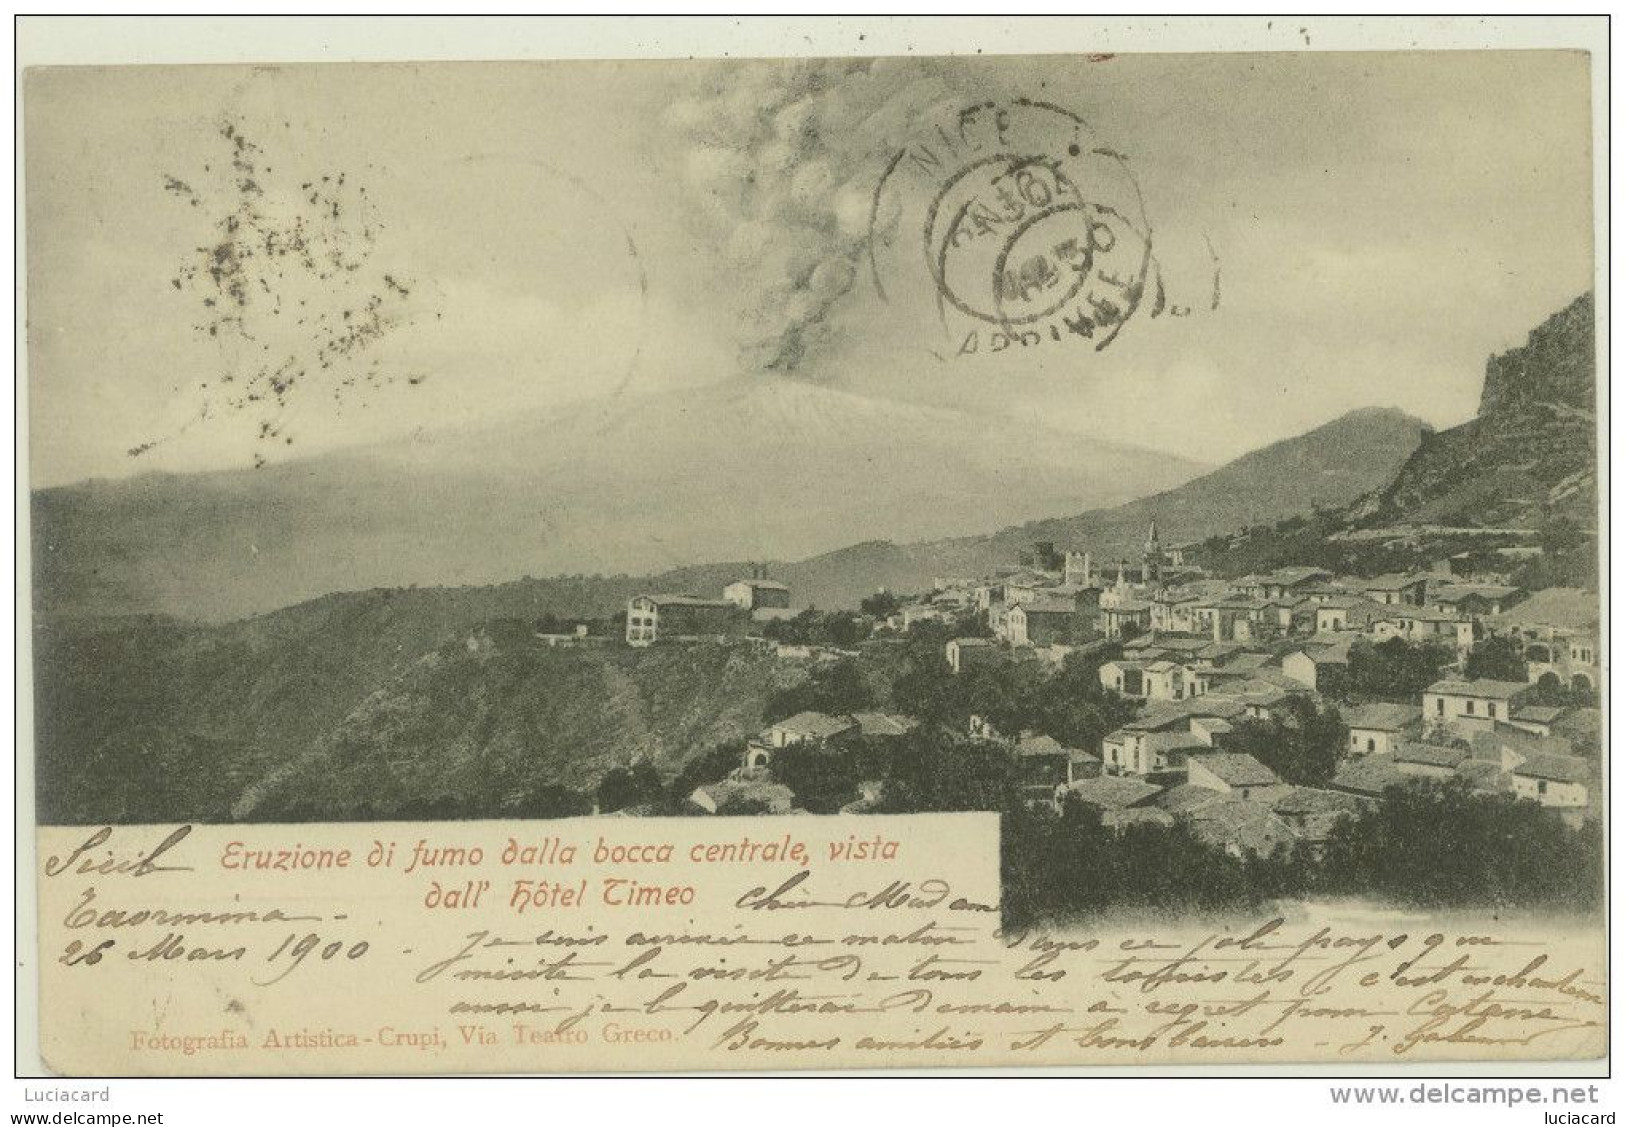 TAORMINA 1900 -MESSINA -ETNA ERUZIONE DI FUMO DALLA BOCCA CENTRALE, VISTA DALL'HOTEL TIMEO - Messina